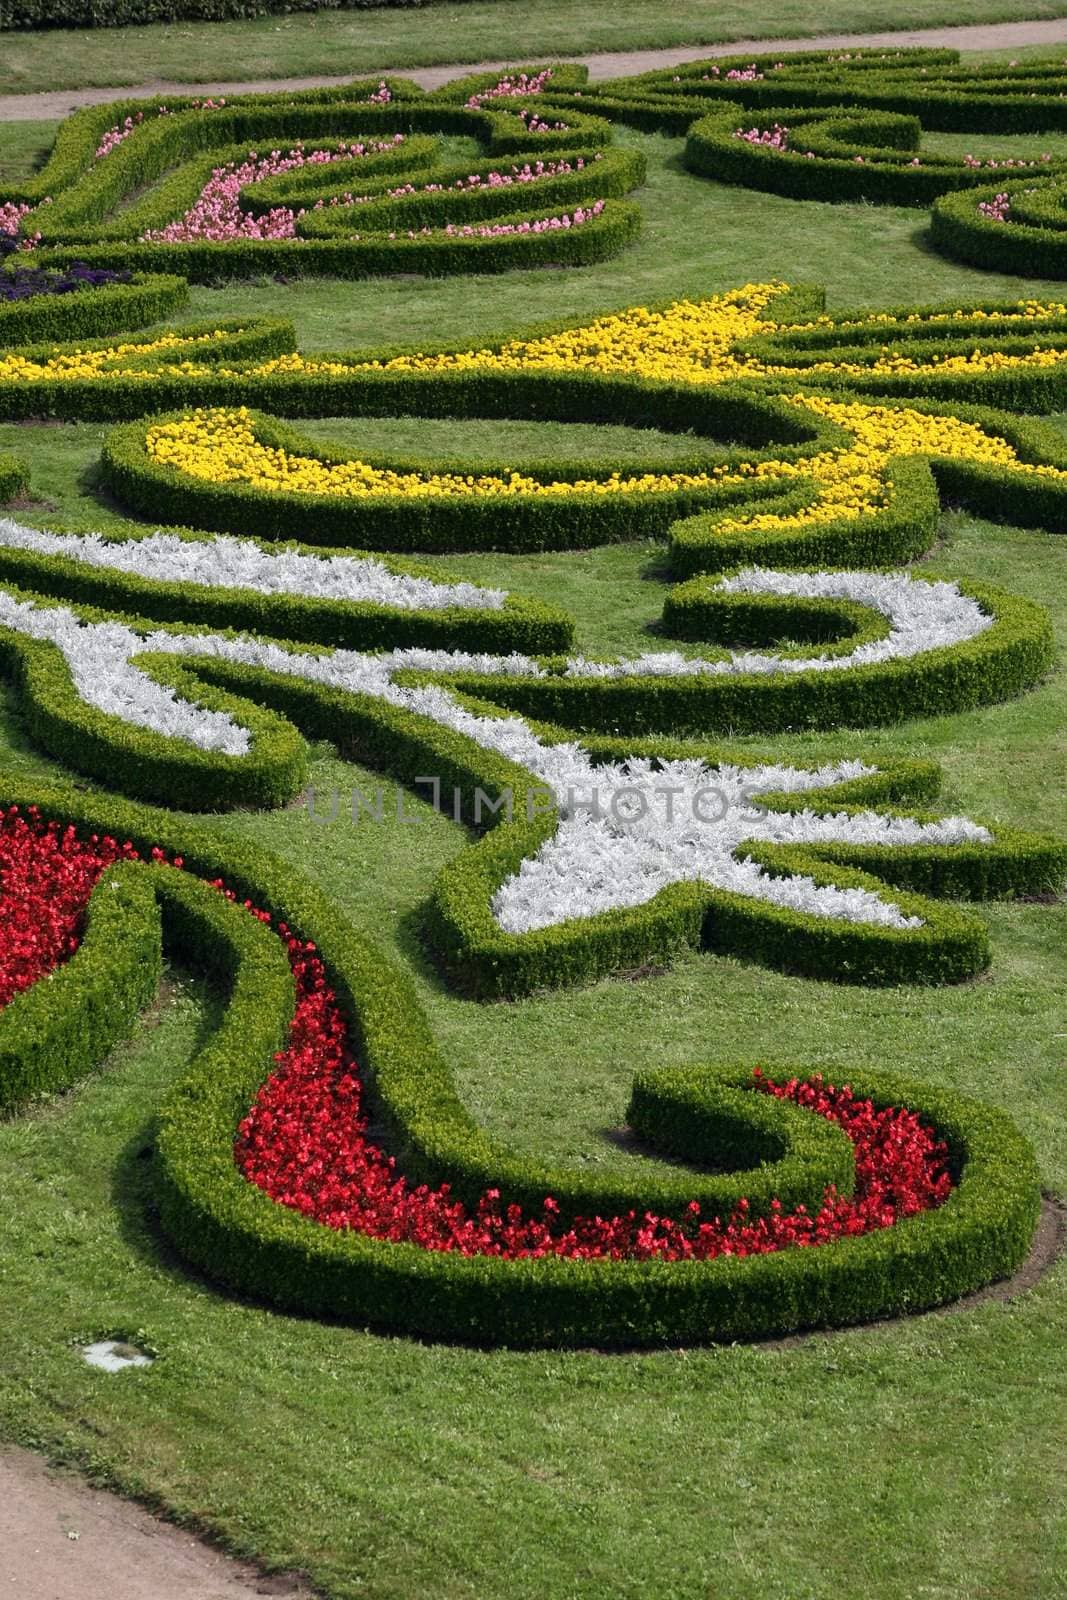 Flower garden of Castle in Kromeriz, Czech Republic by haak78